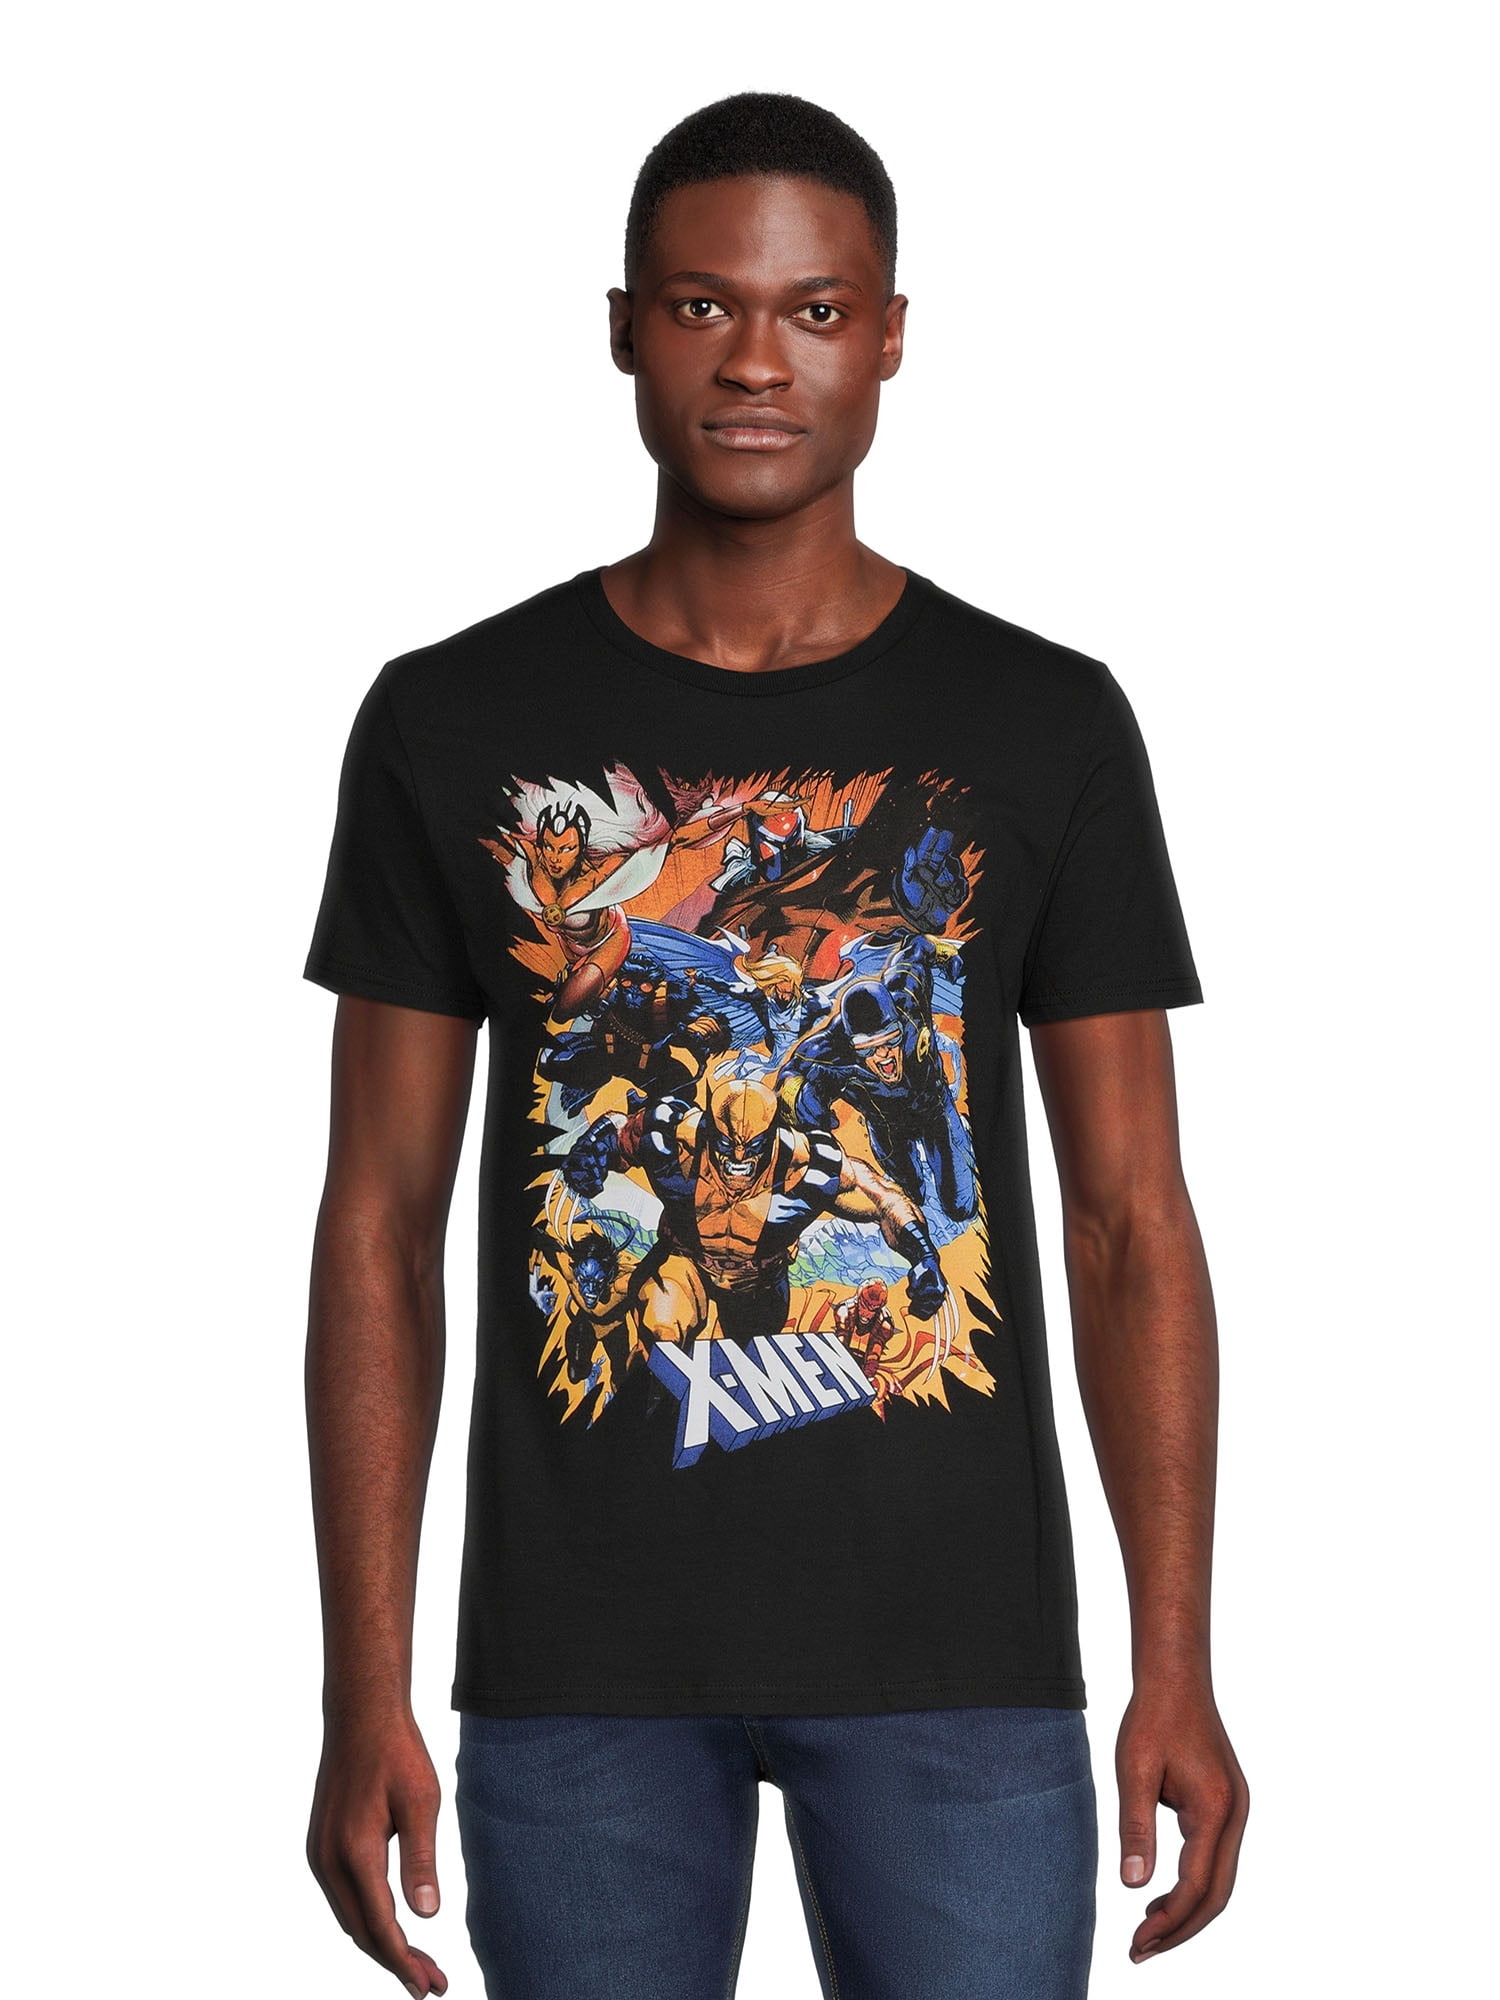 Marvel Men's X-Men Group Graphic Shirt, Size S-3XL - Walmart.com